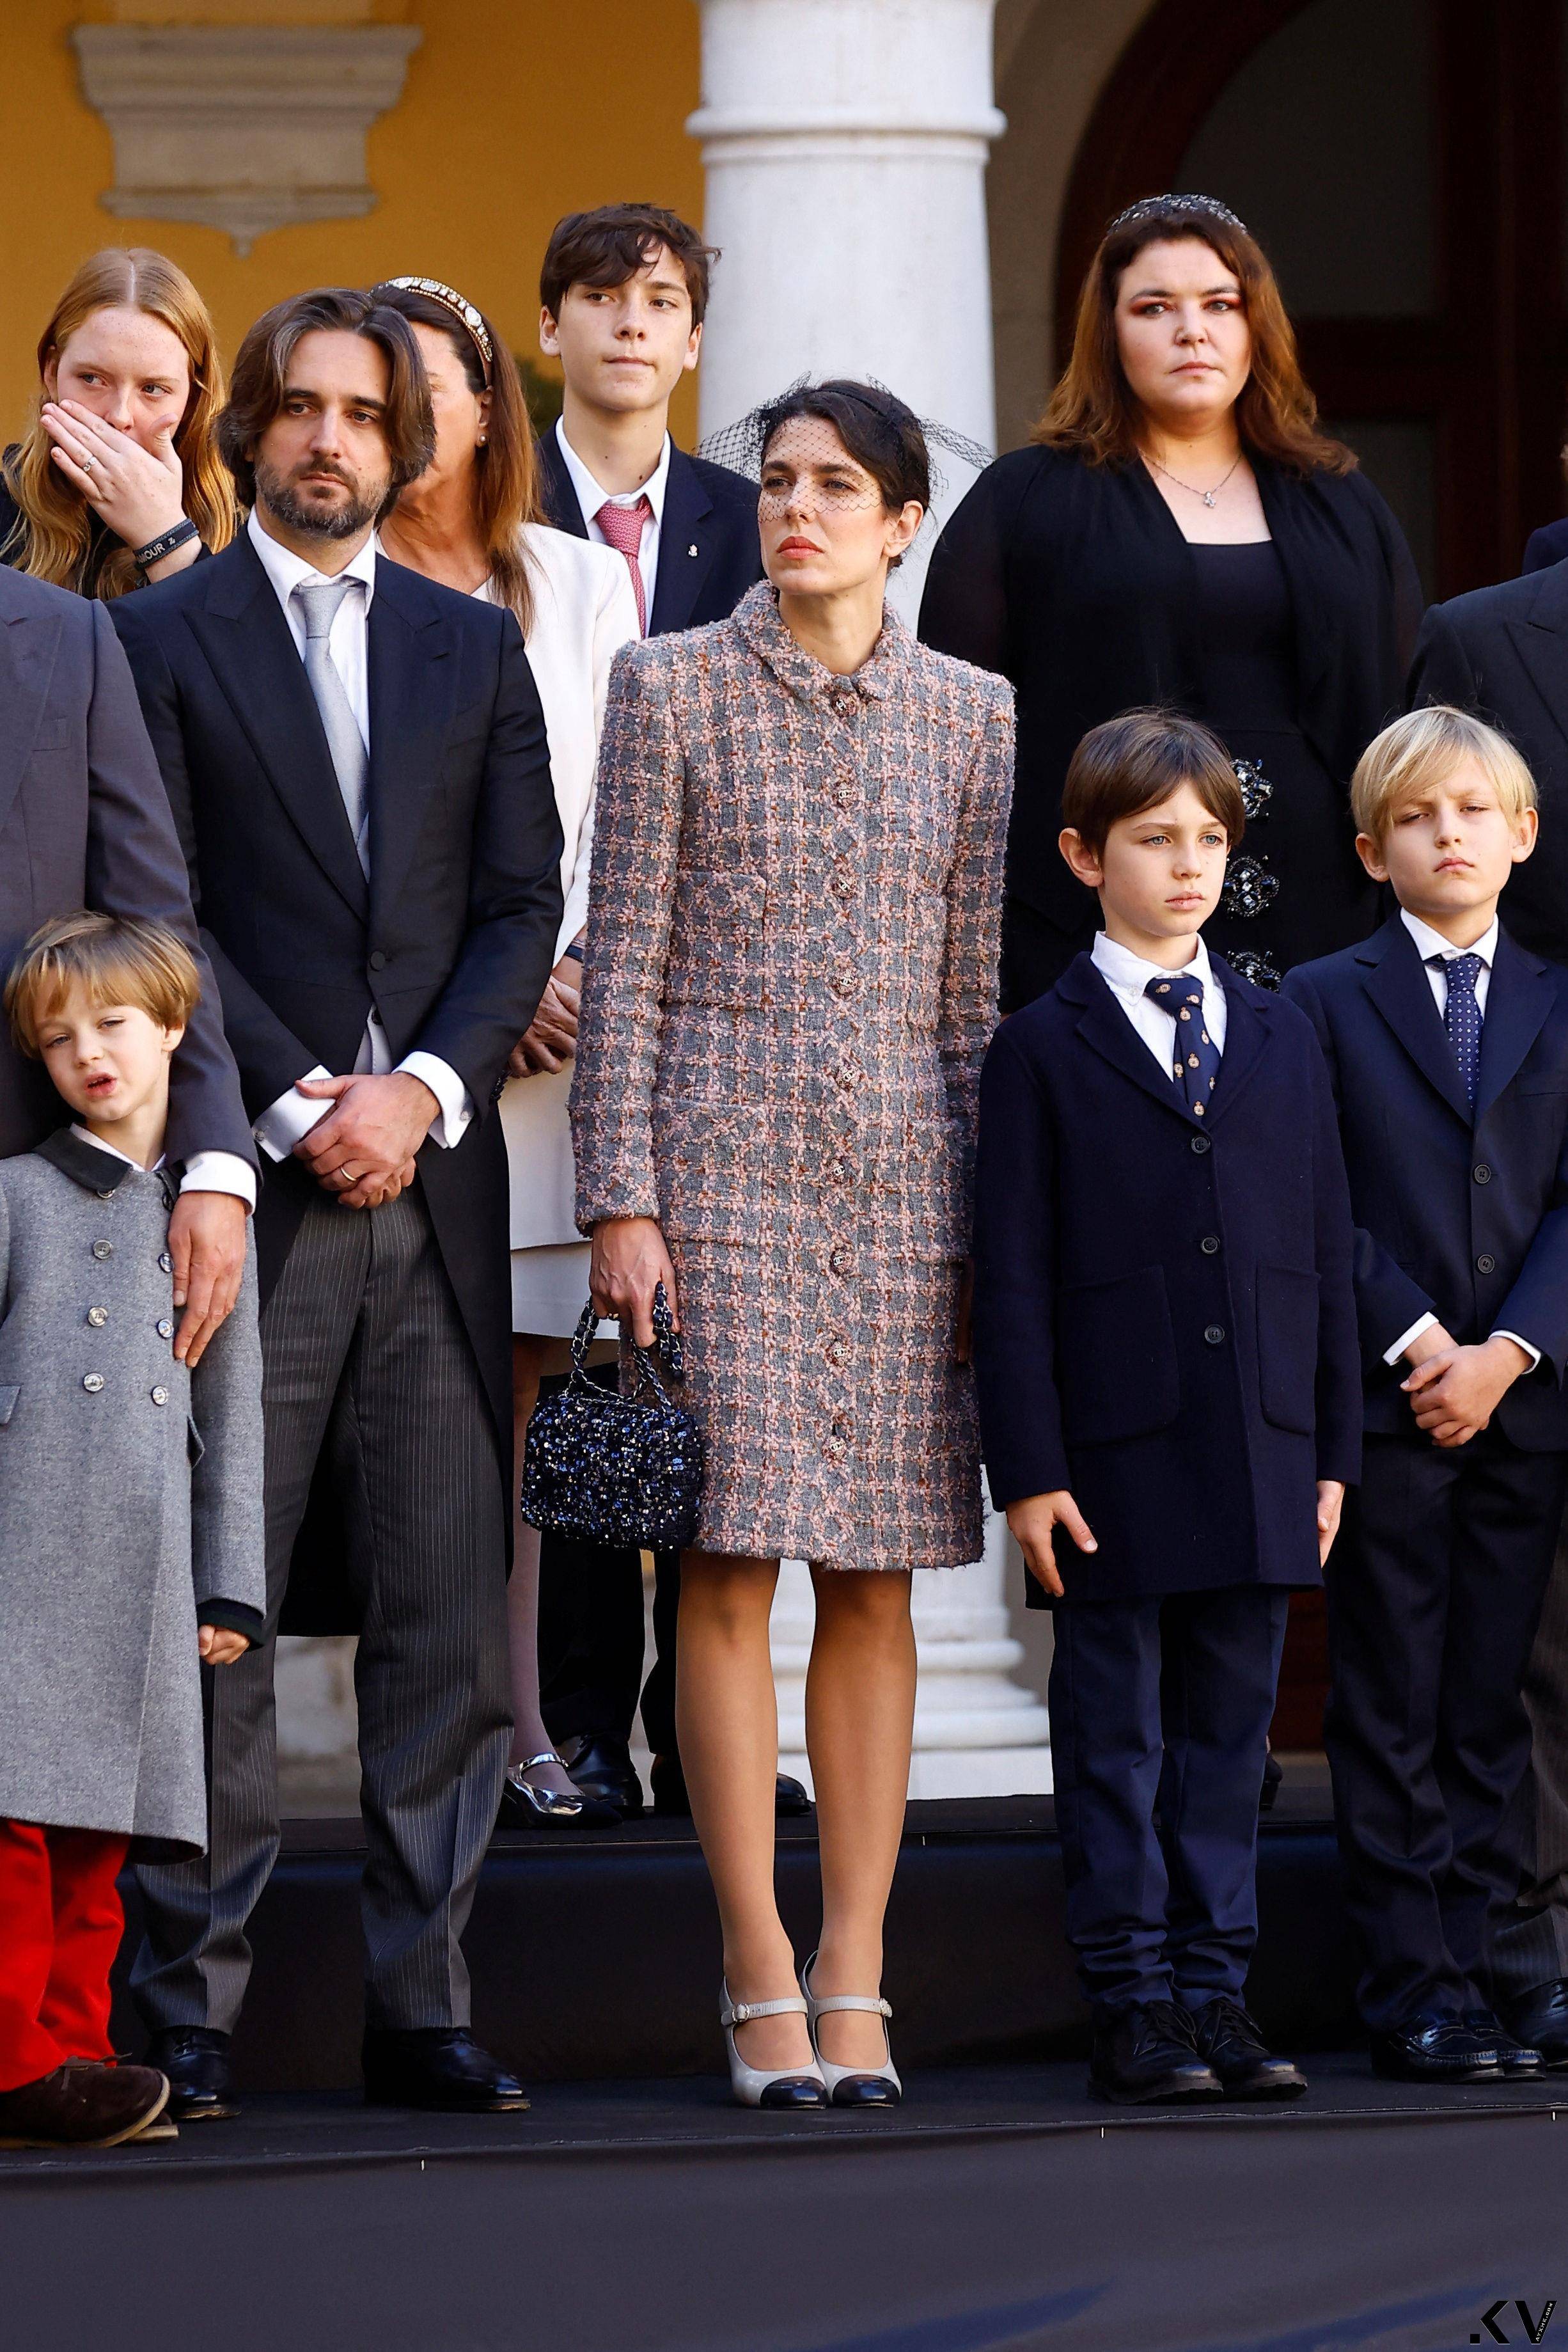 摩纳哥王室把香奈儿当制服穿　“最美王子妃”Dior红装突围 奢侈品牌 图4张